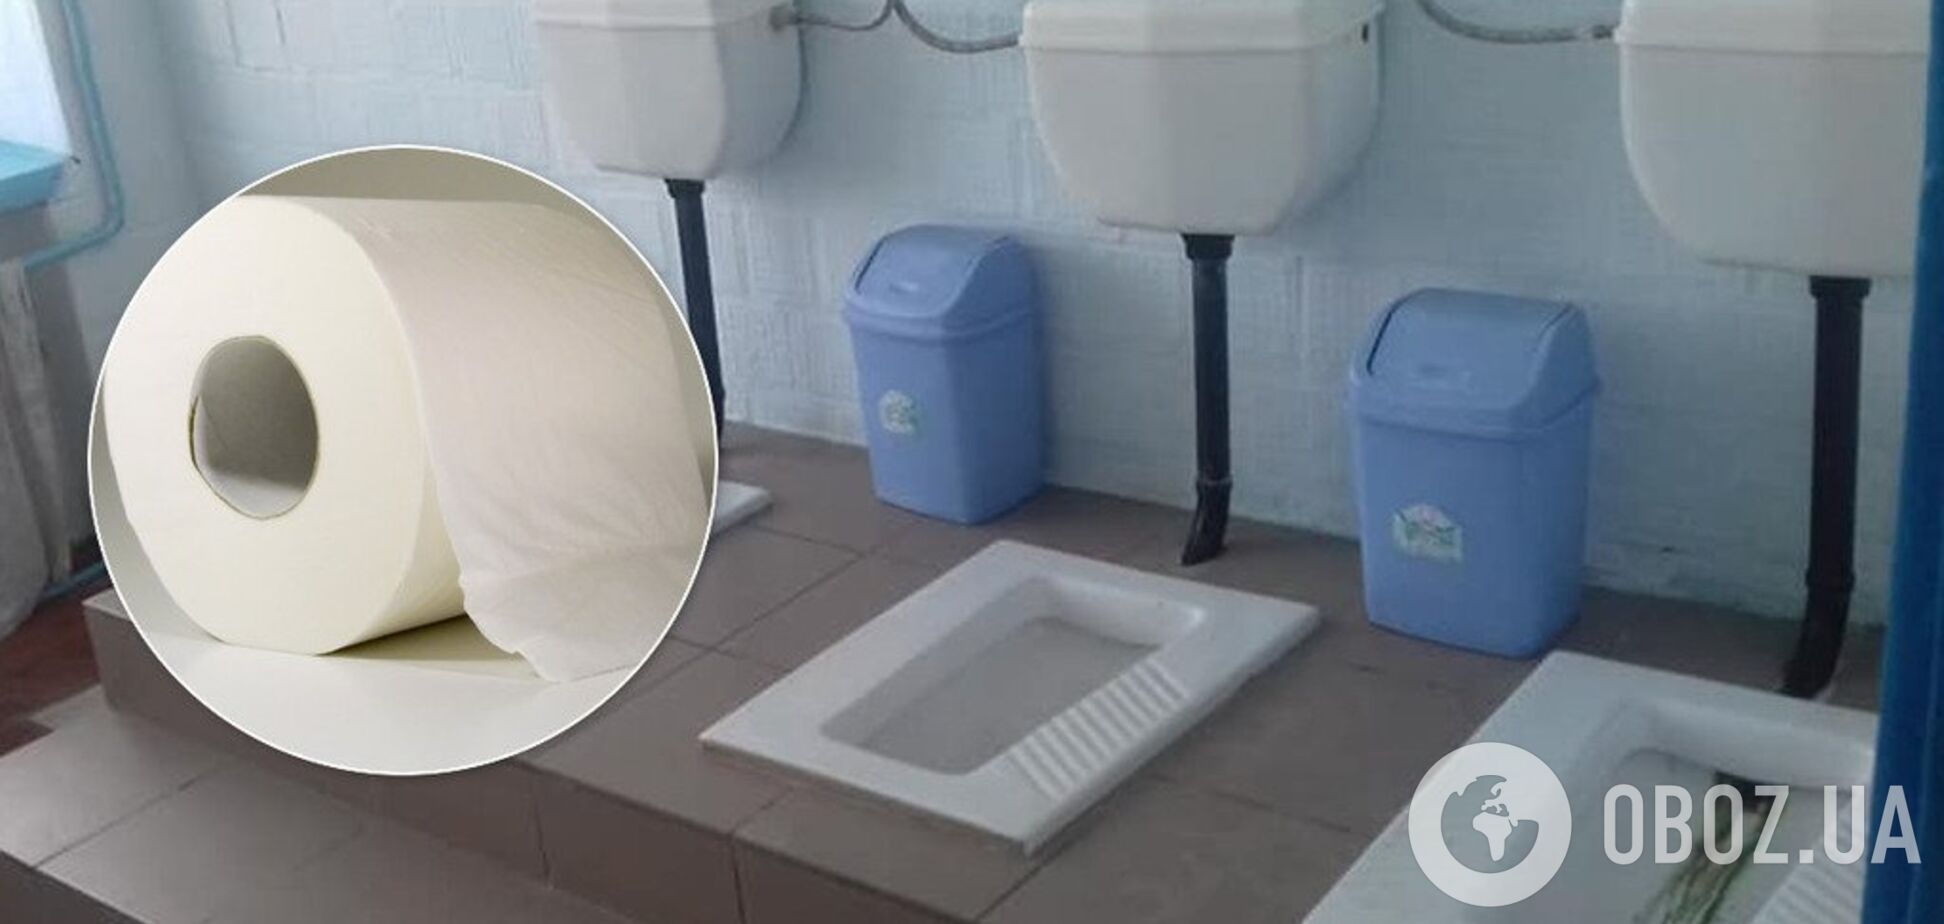 Щоб не забивали труби: у школах на Київщині в туалетах заборонили папір